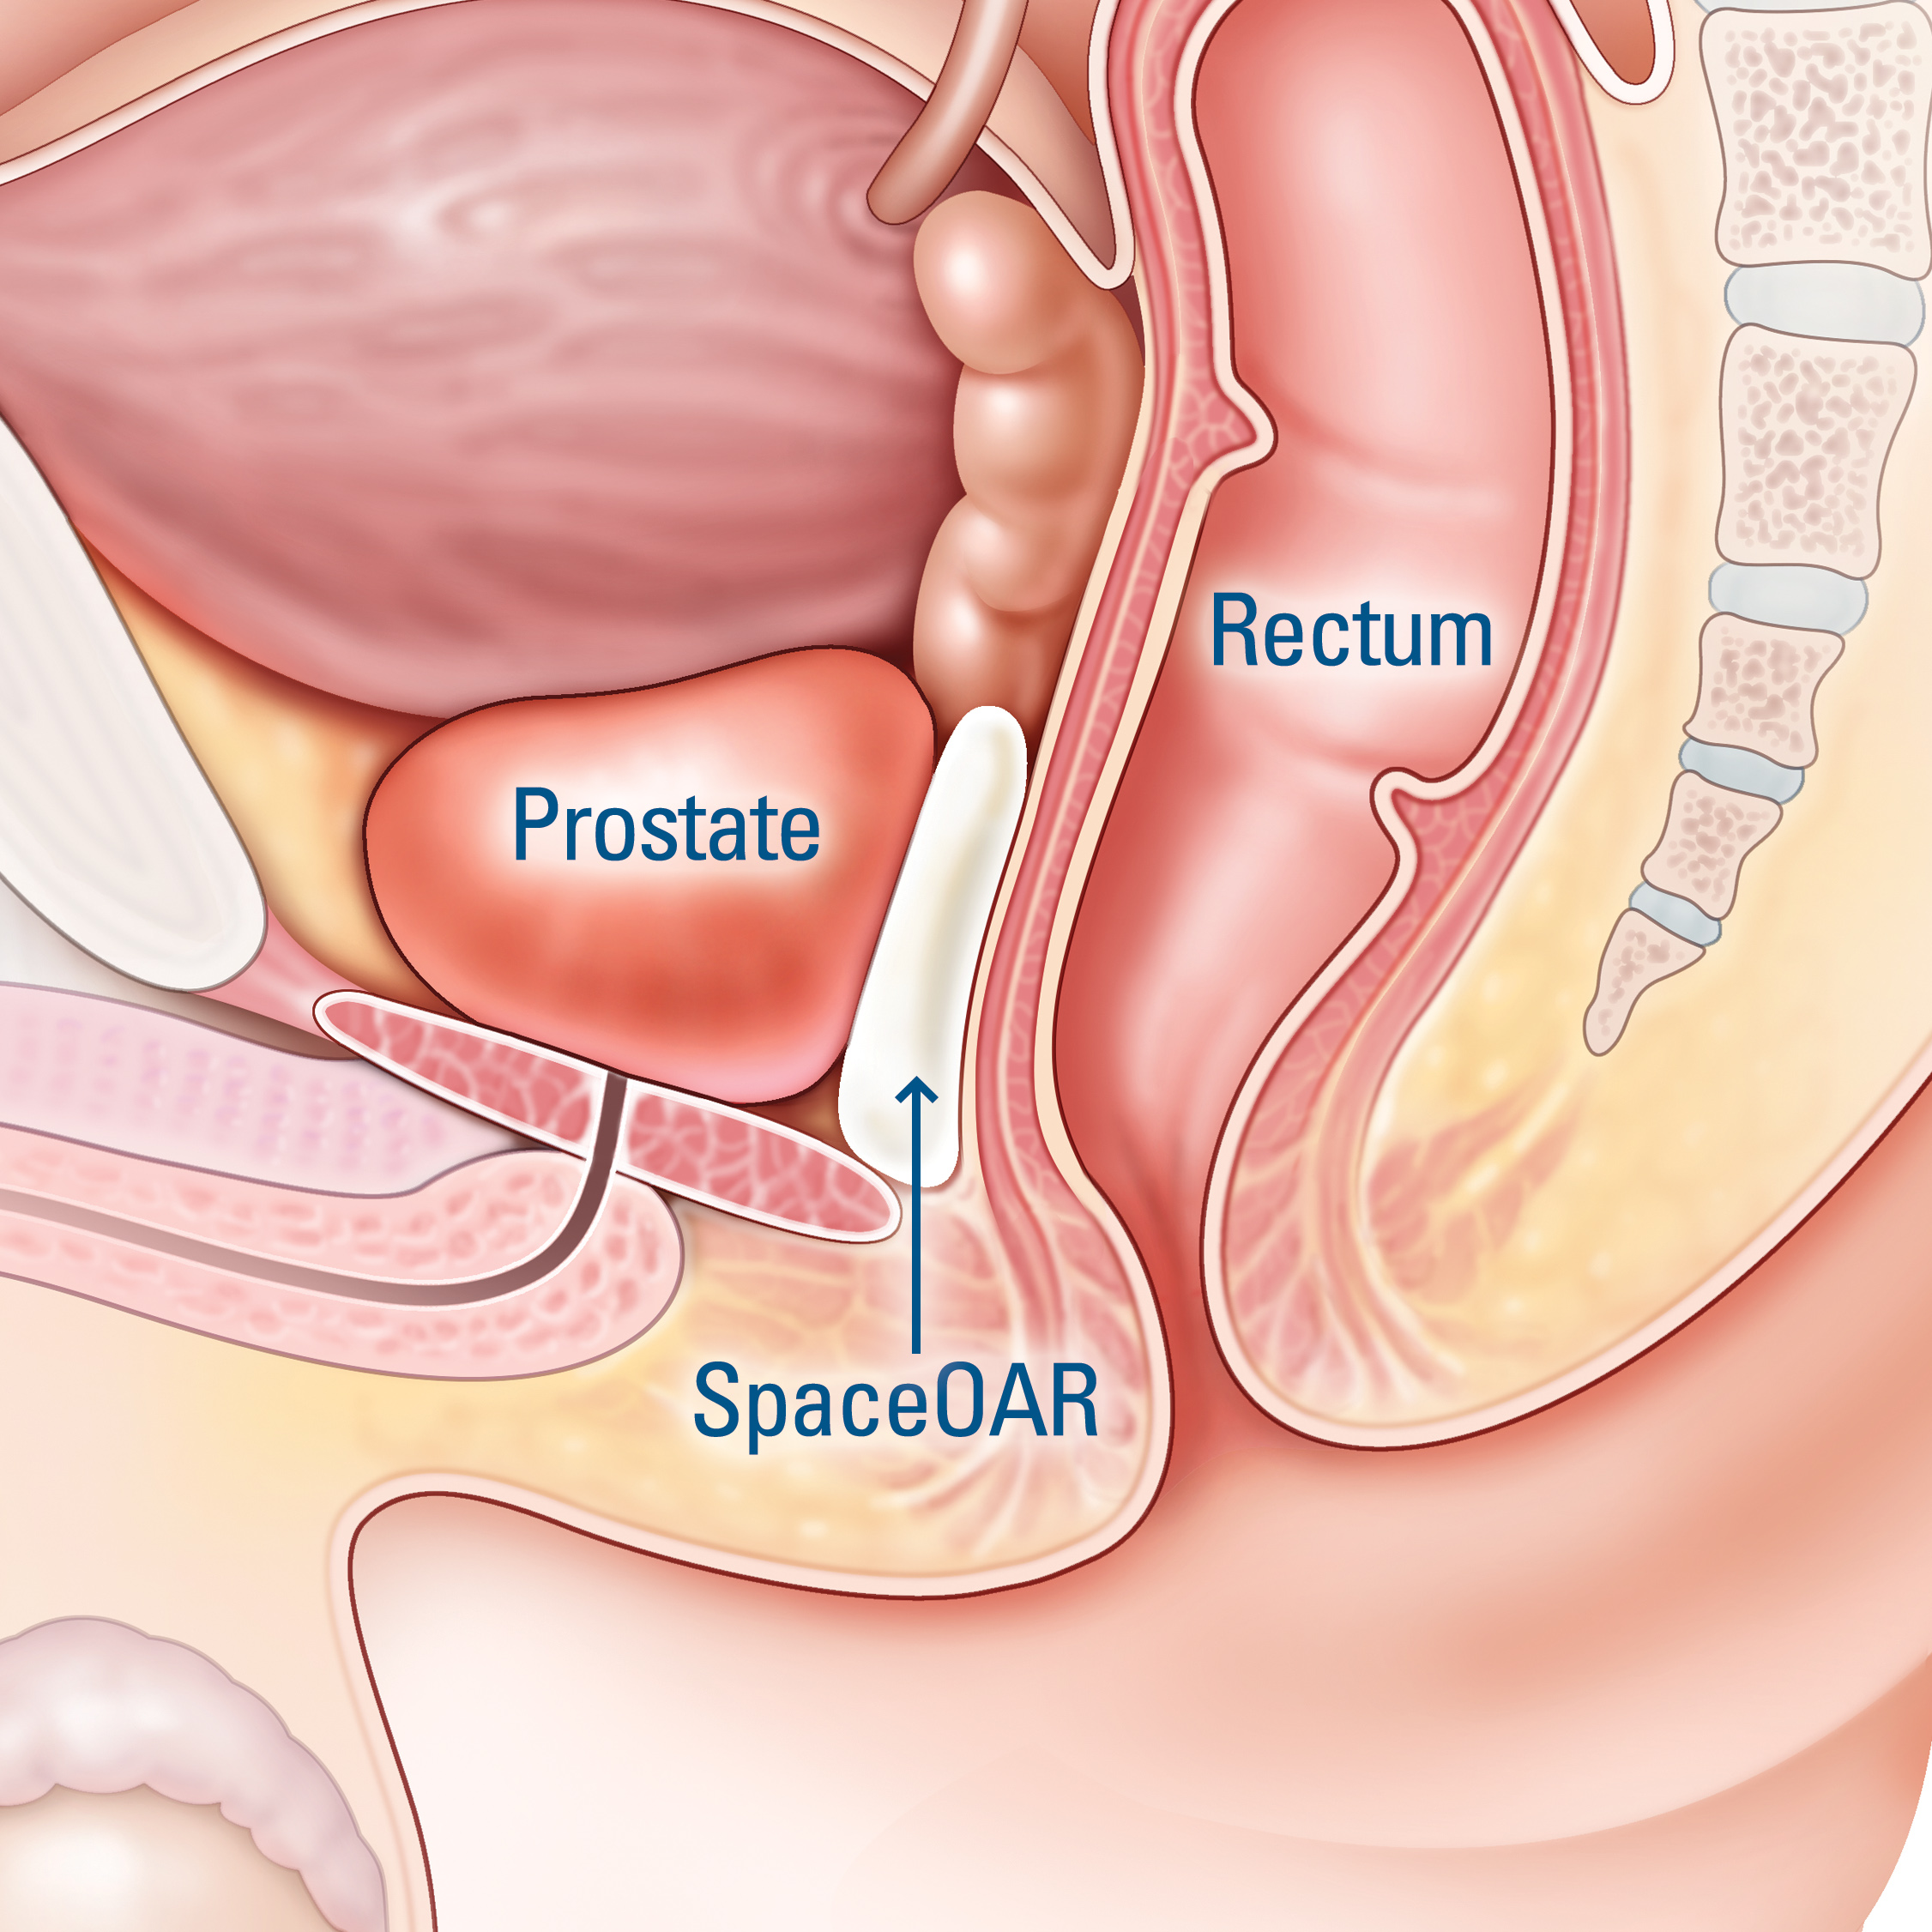 Supravegherea activa: O optiune pentru cancerul de prostata cu risc scazut | p5net.ro